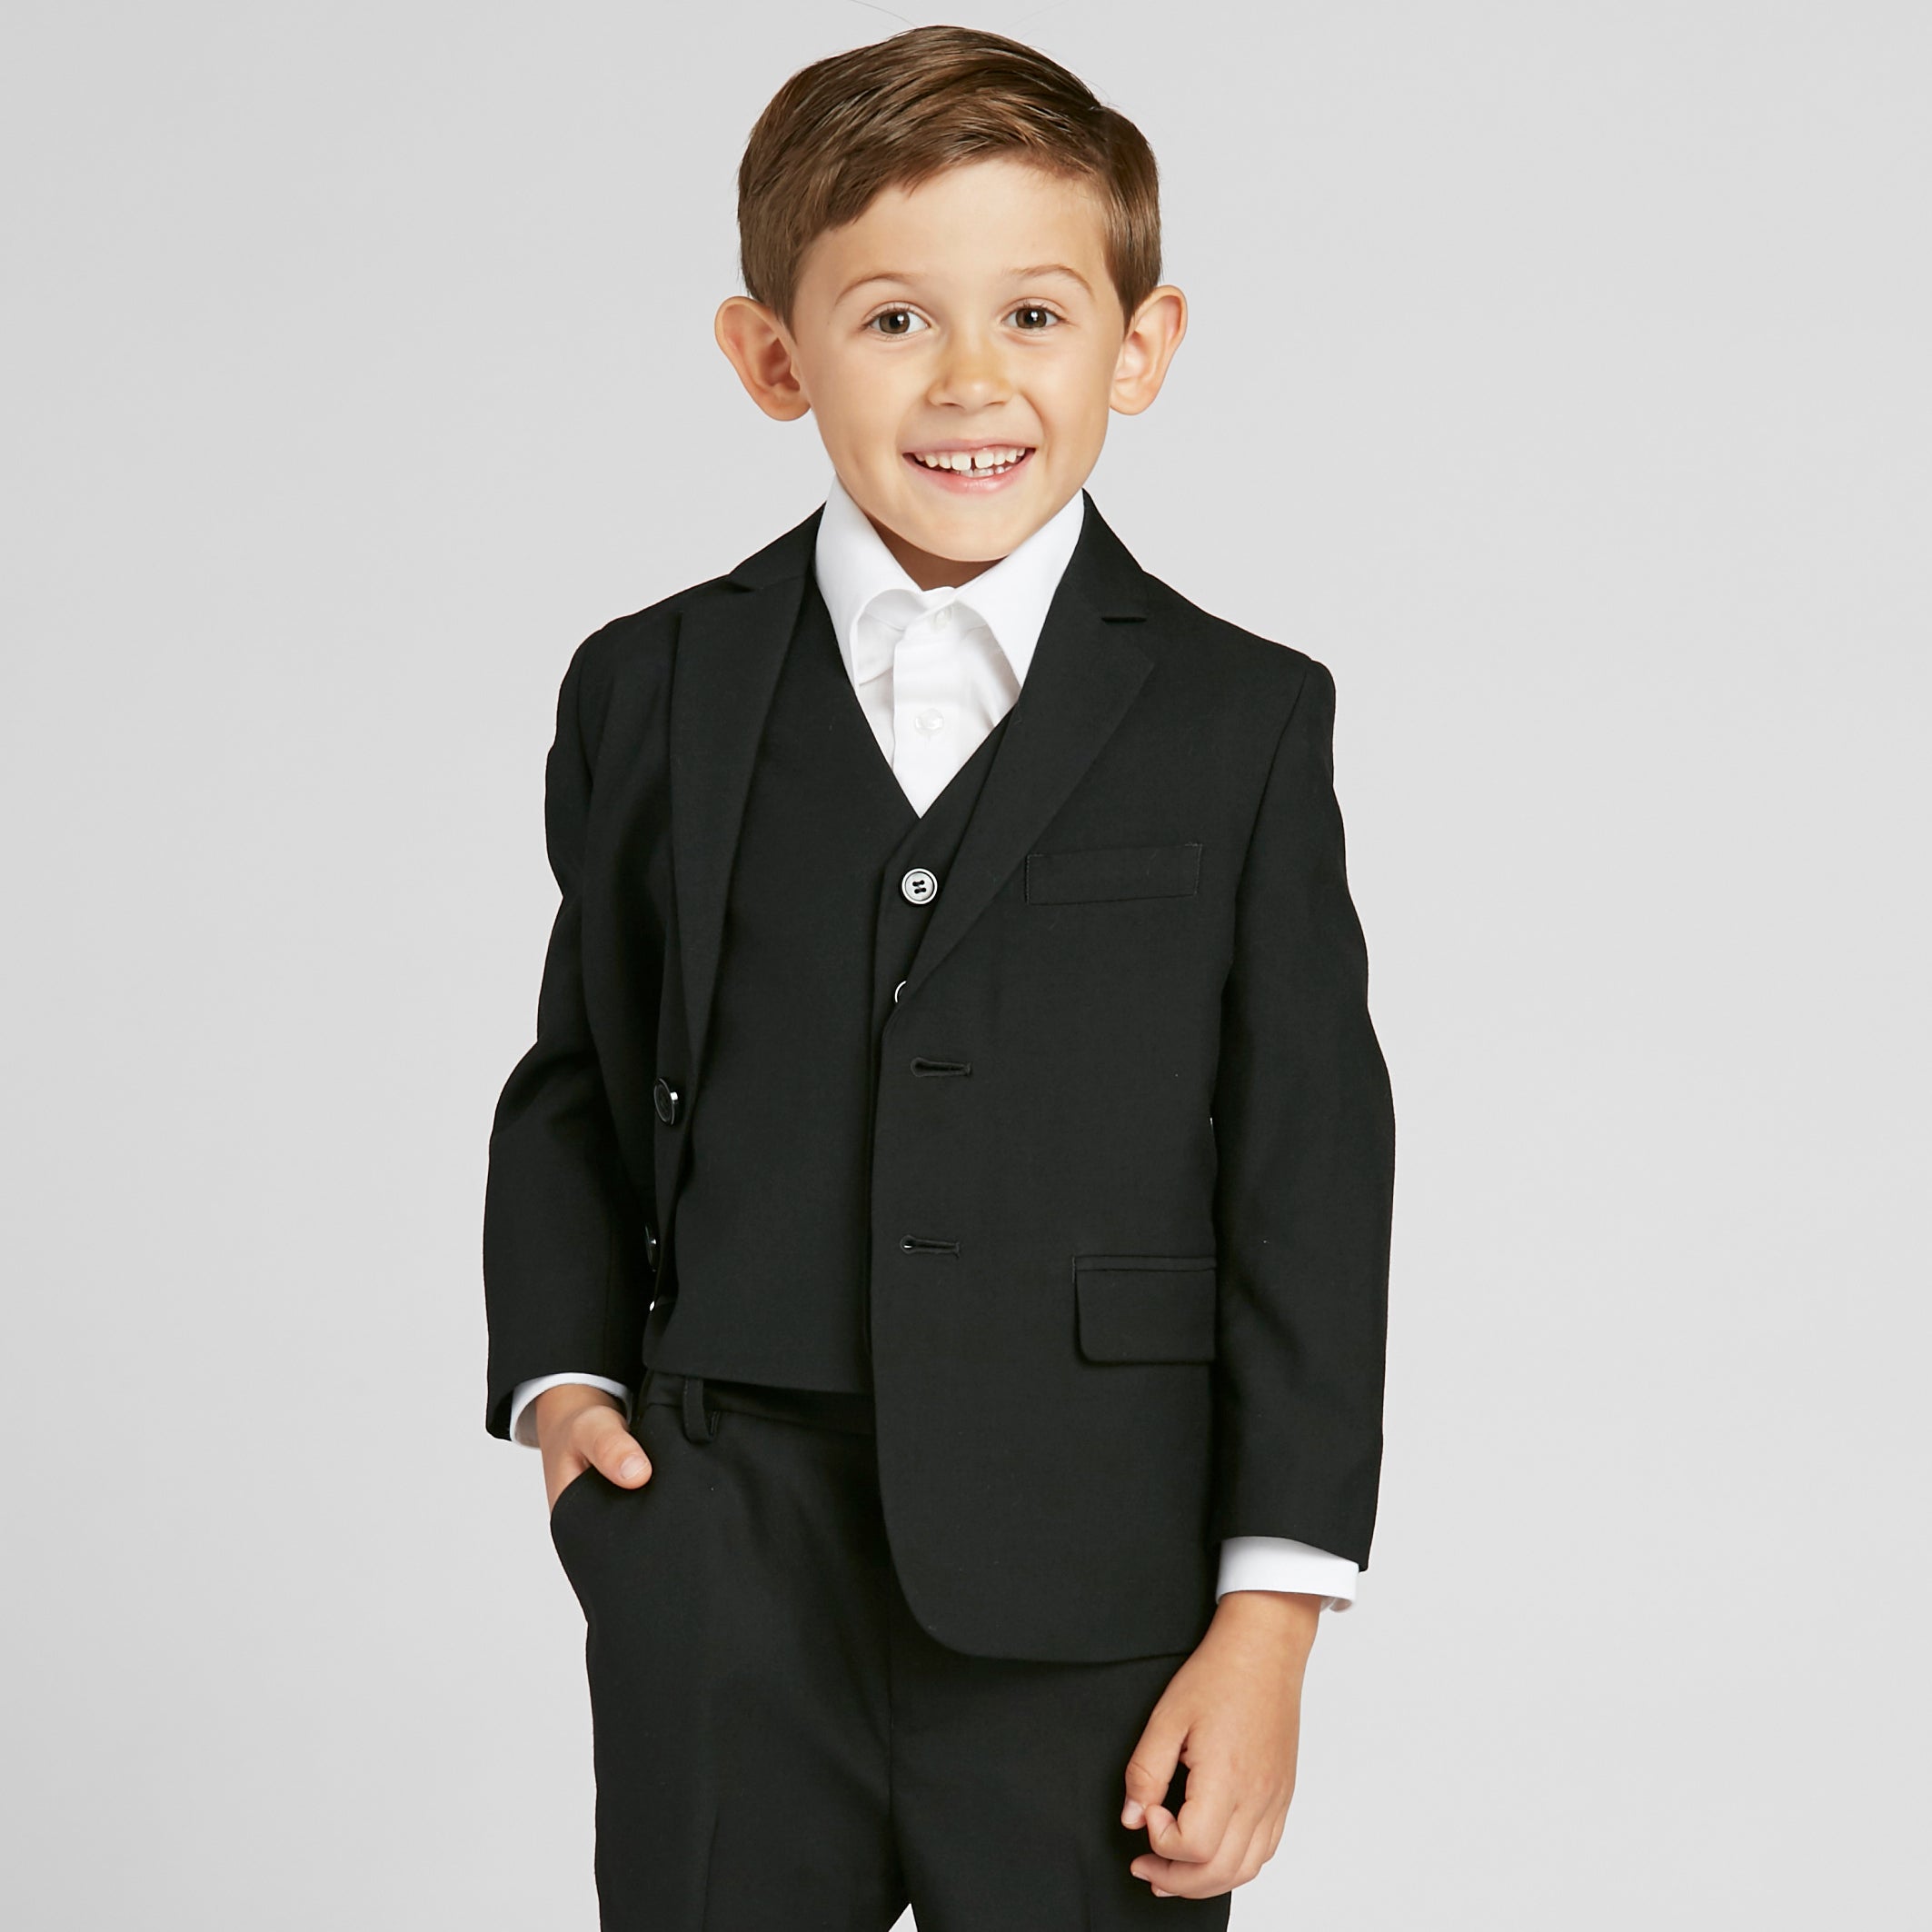 Boy's Black Suit - The Groomsman Suit